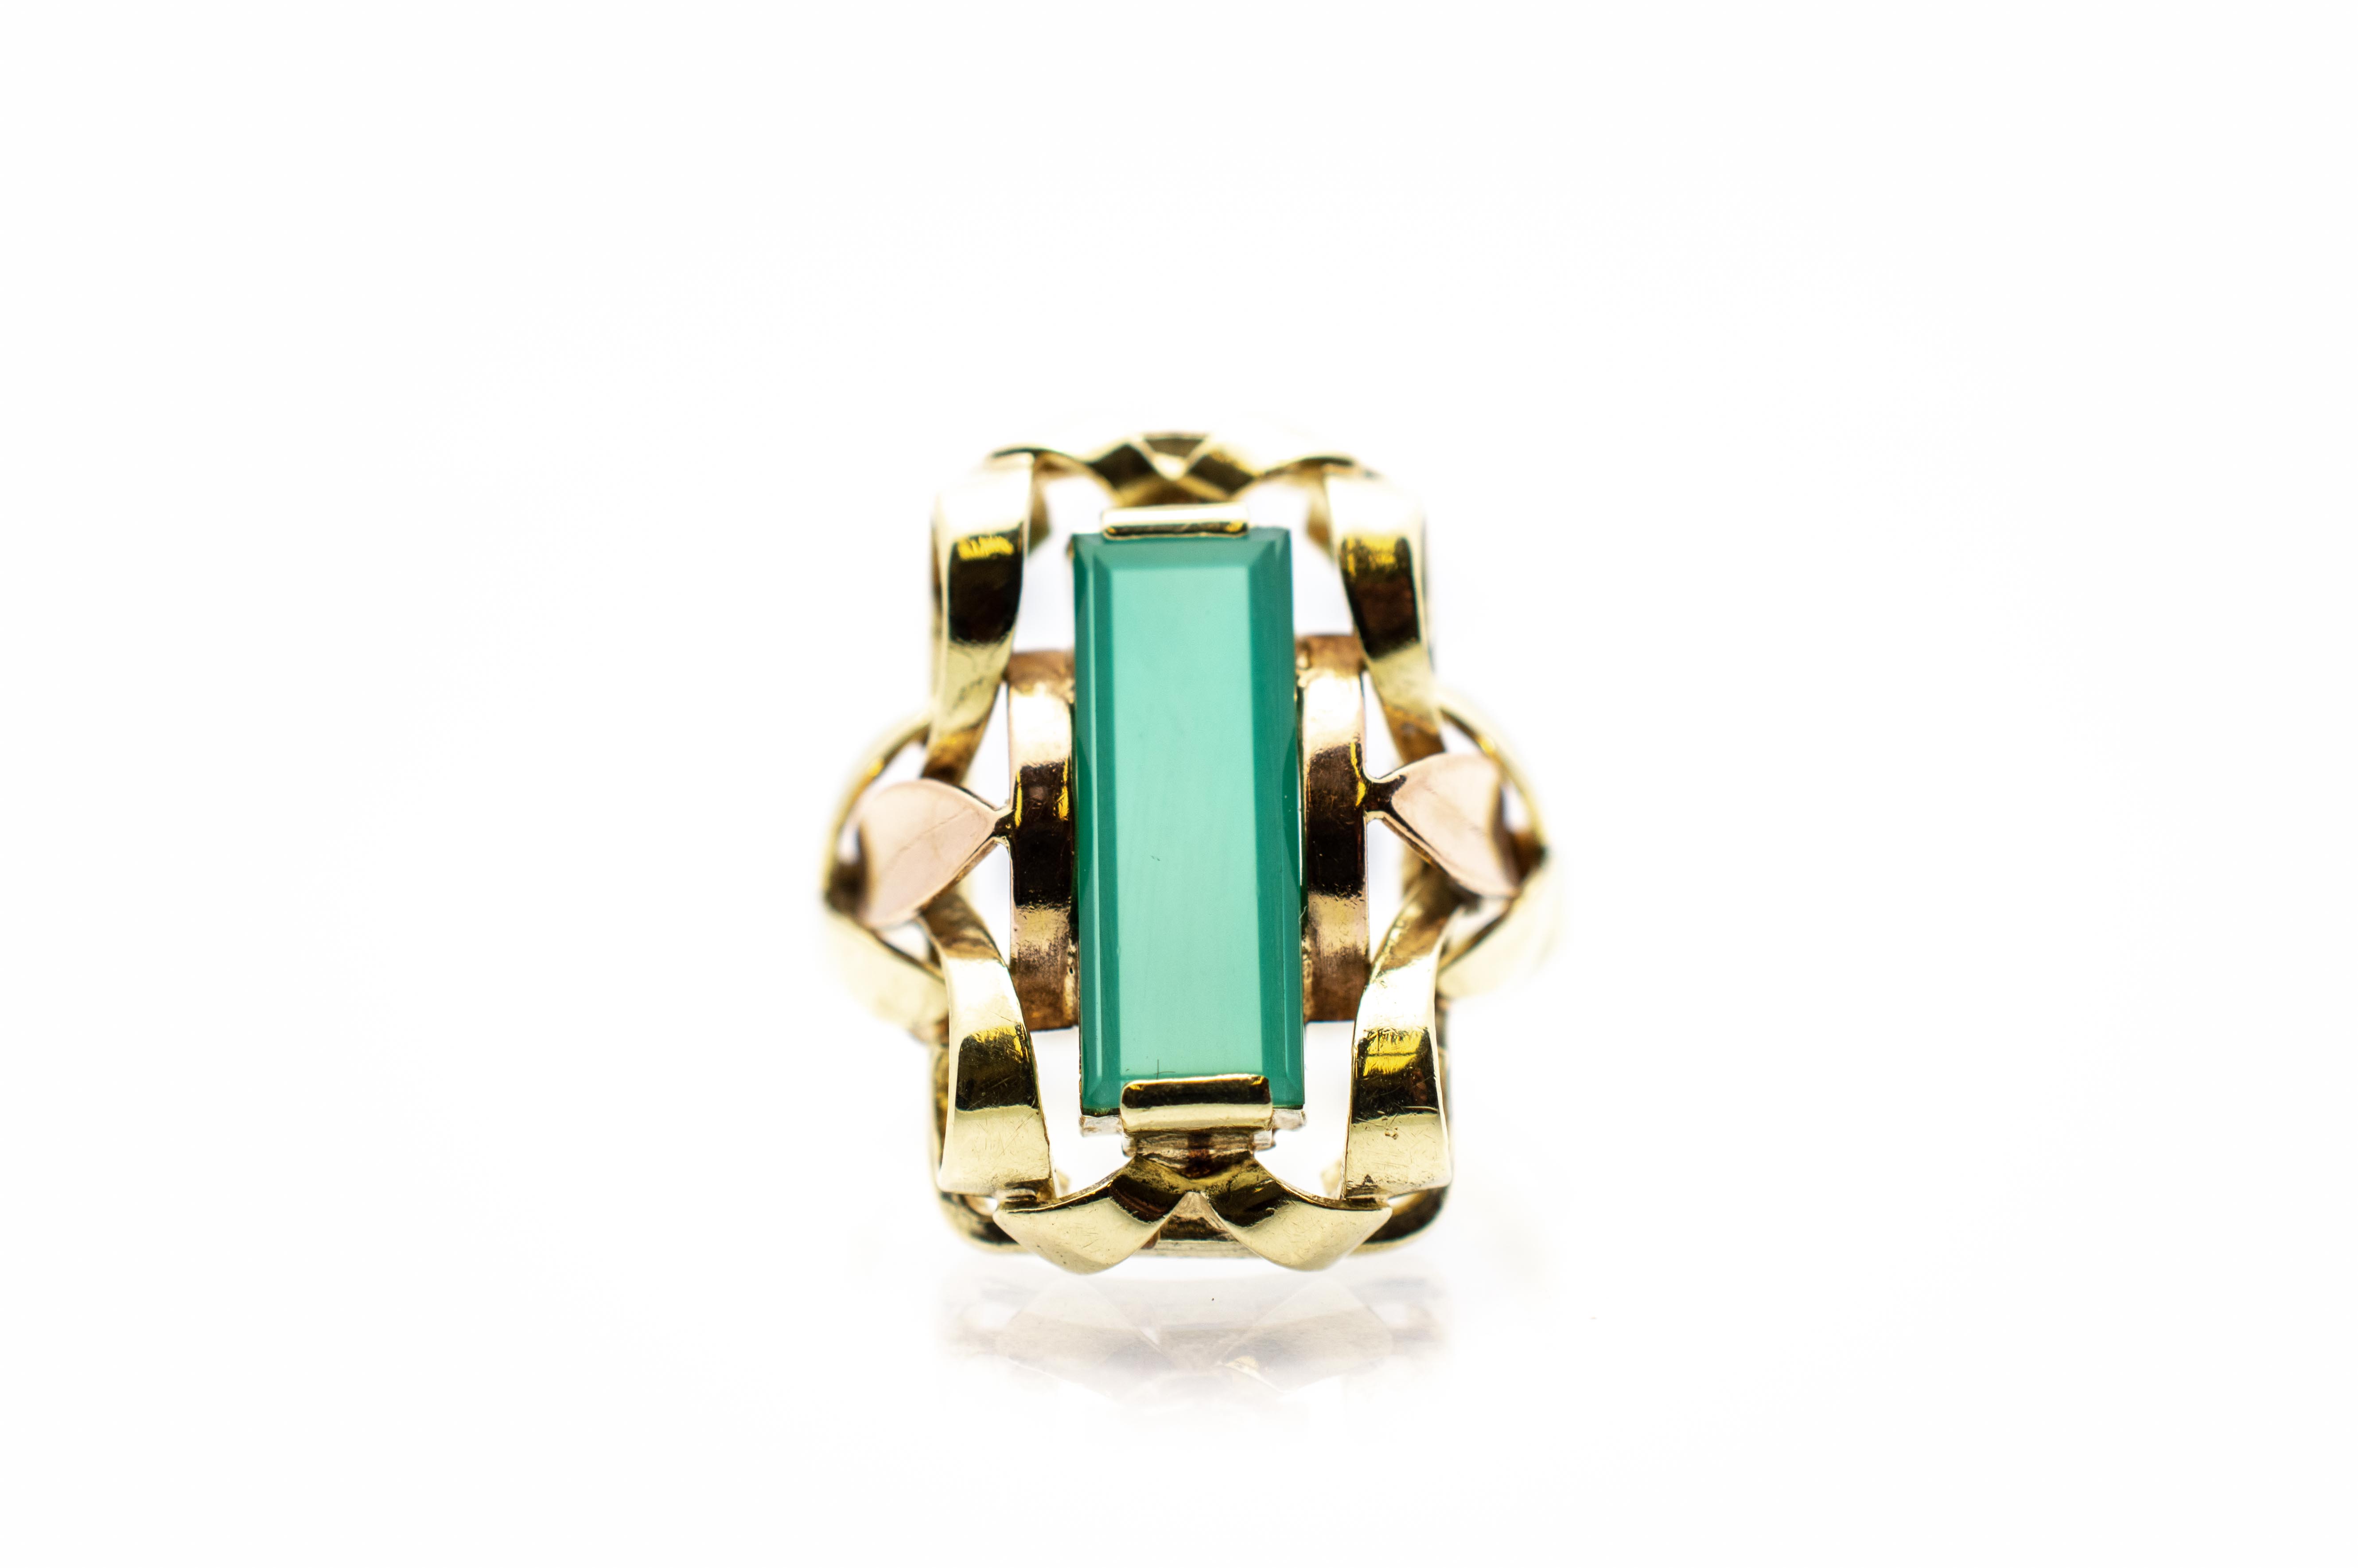 Zlatý prsten se zeleným kamenem - chryzopras, vel. 56